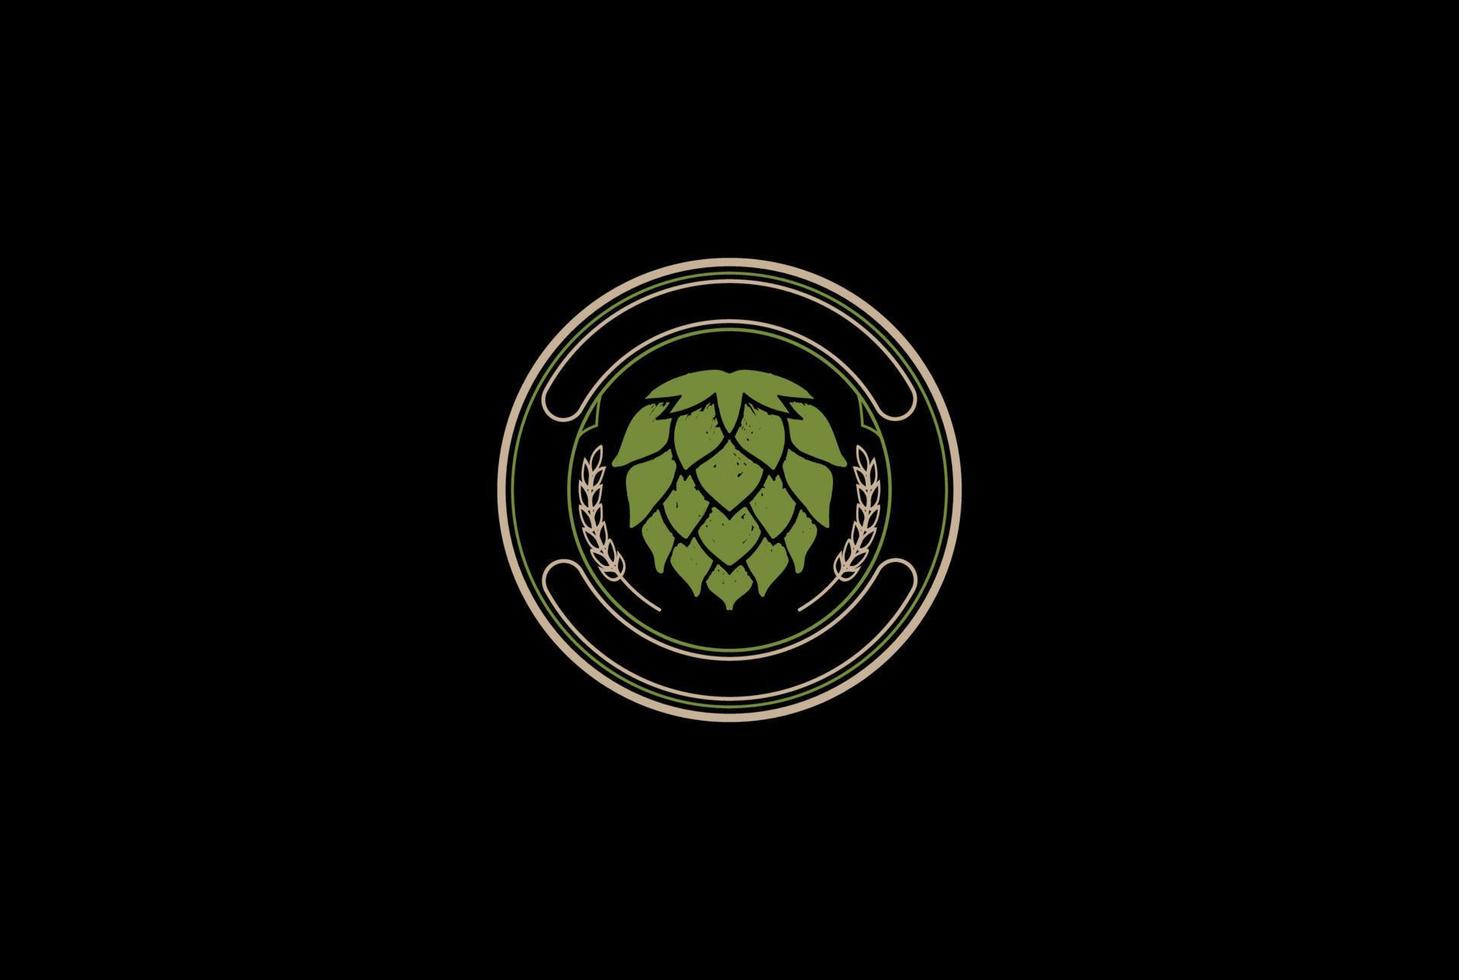 lúpulo verde simples velho com malte de grão para cerveja artesanal, cervejaria ou vetor de design de logotipo de rótulo de cervejaria